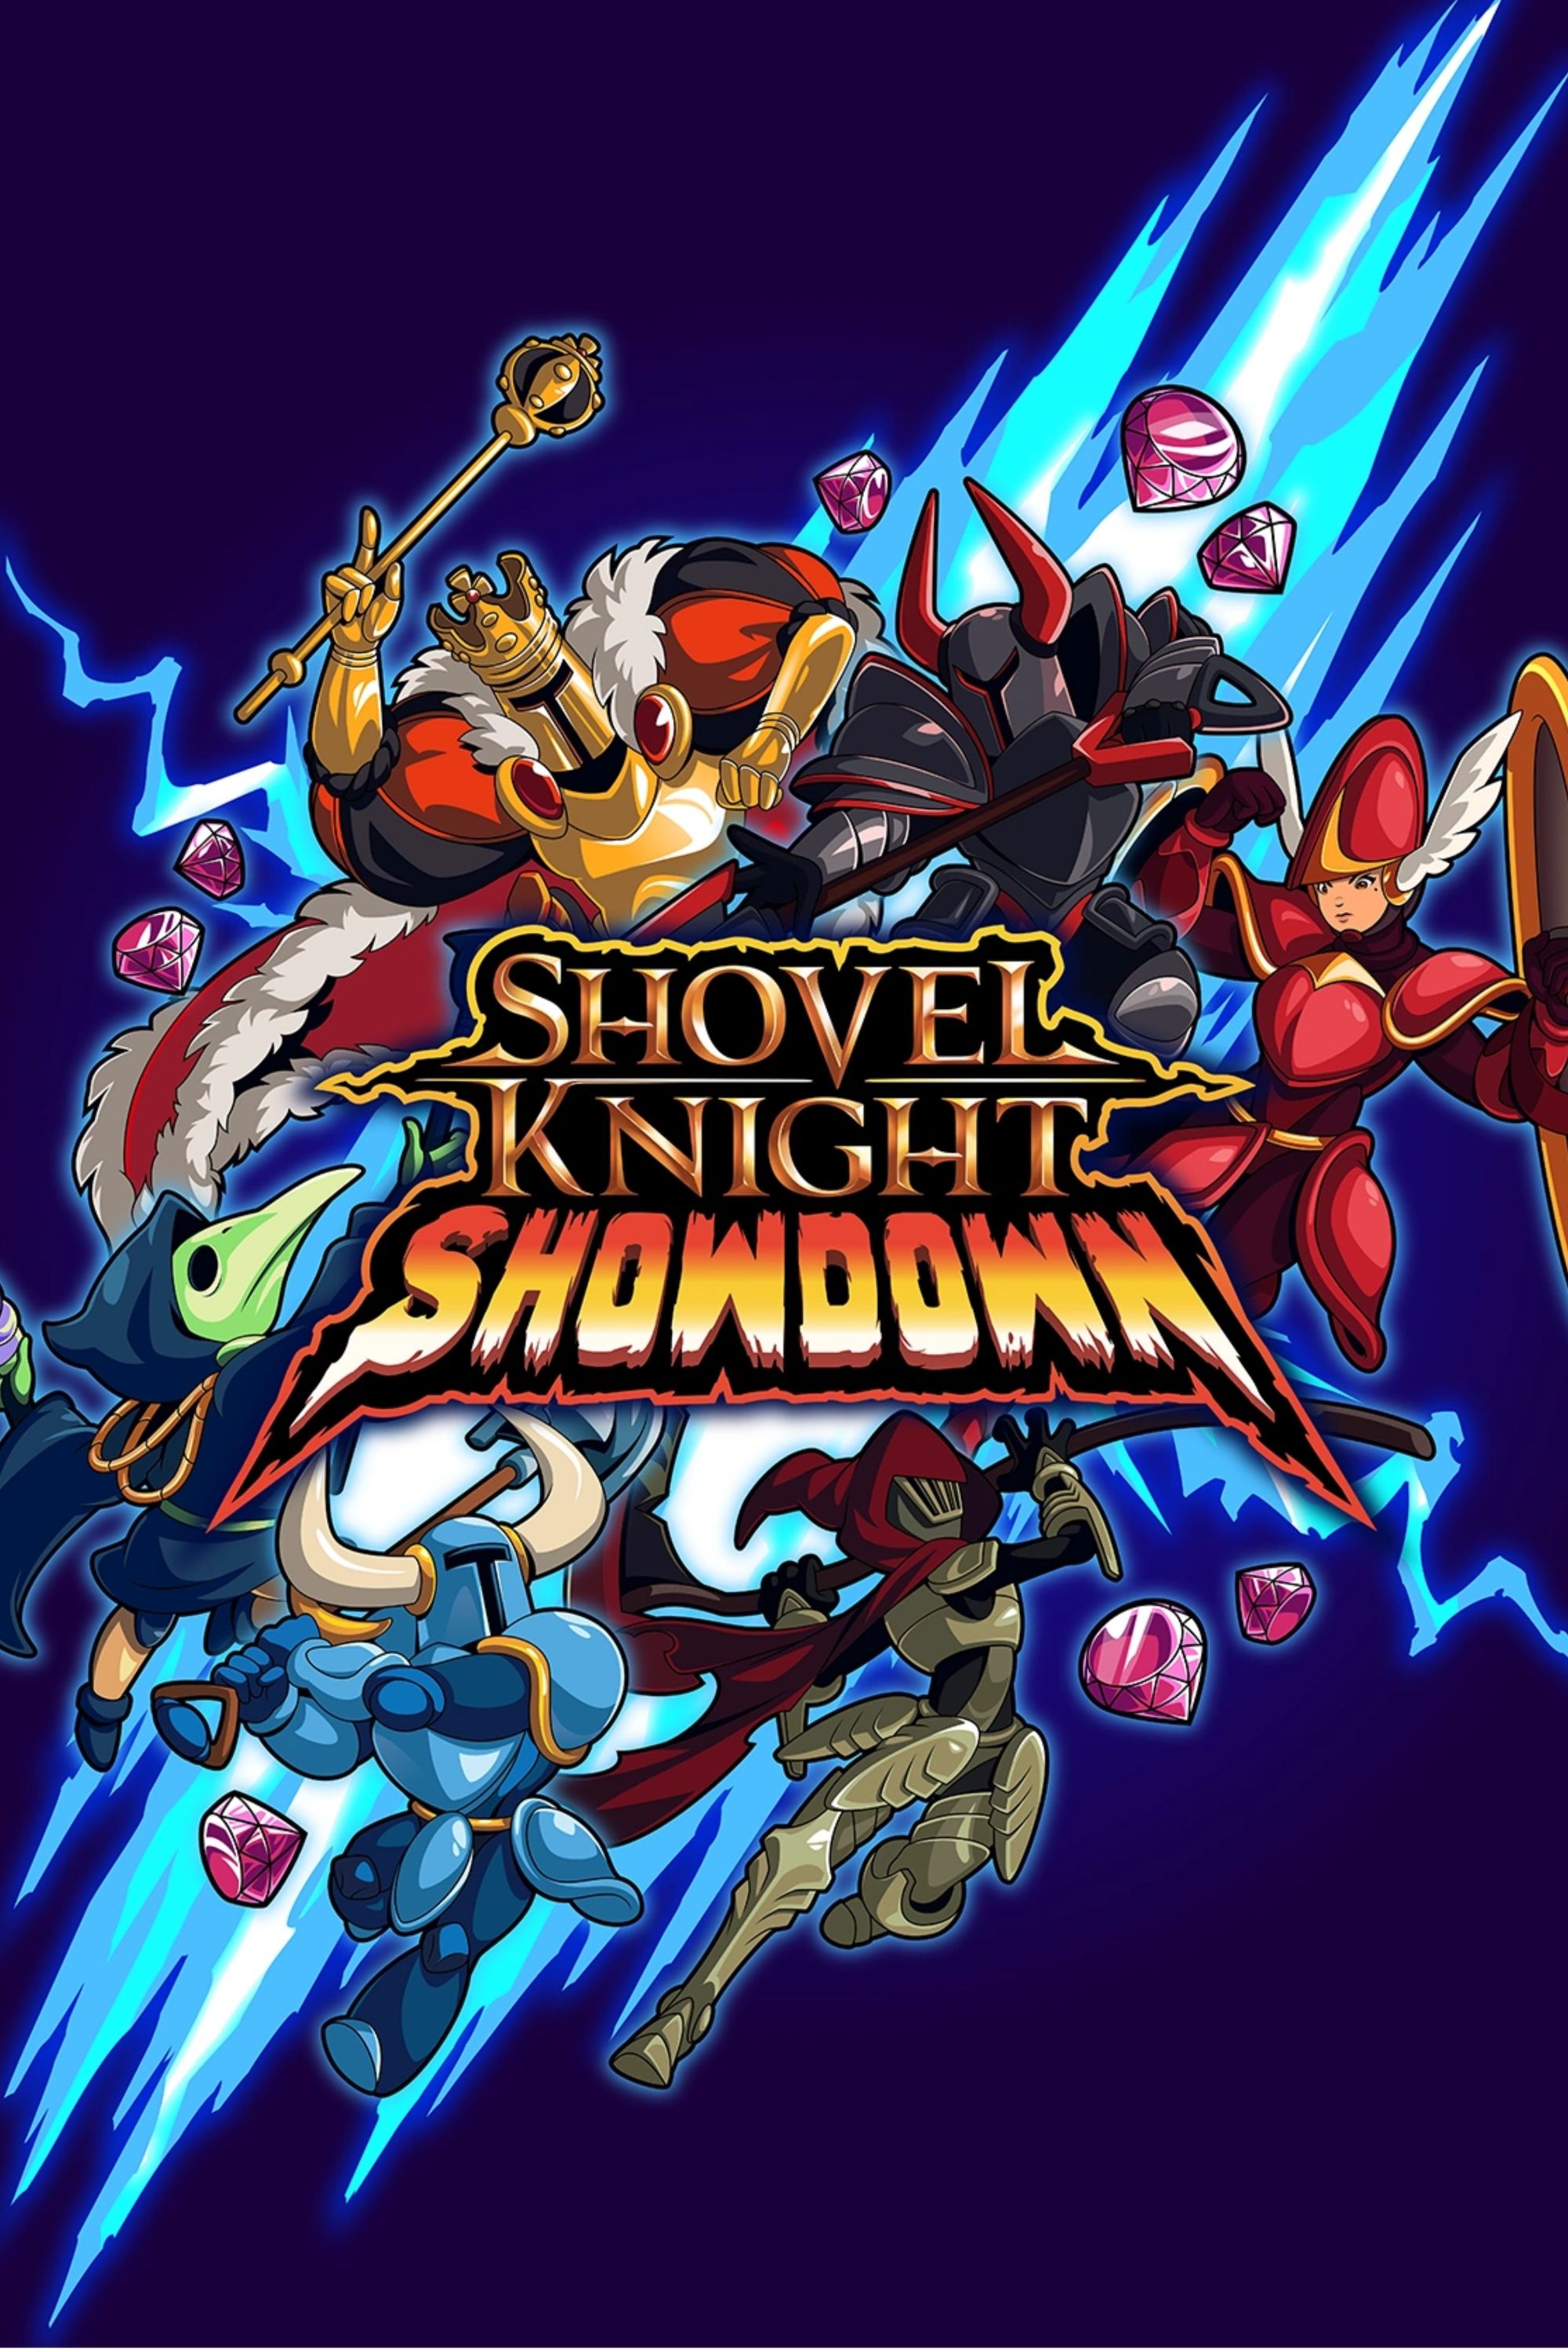 Shovel Knight Showdown cover art